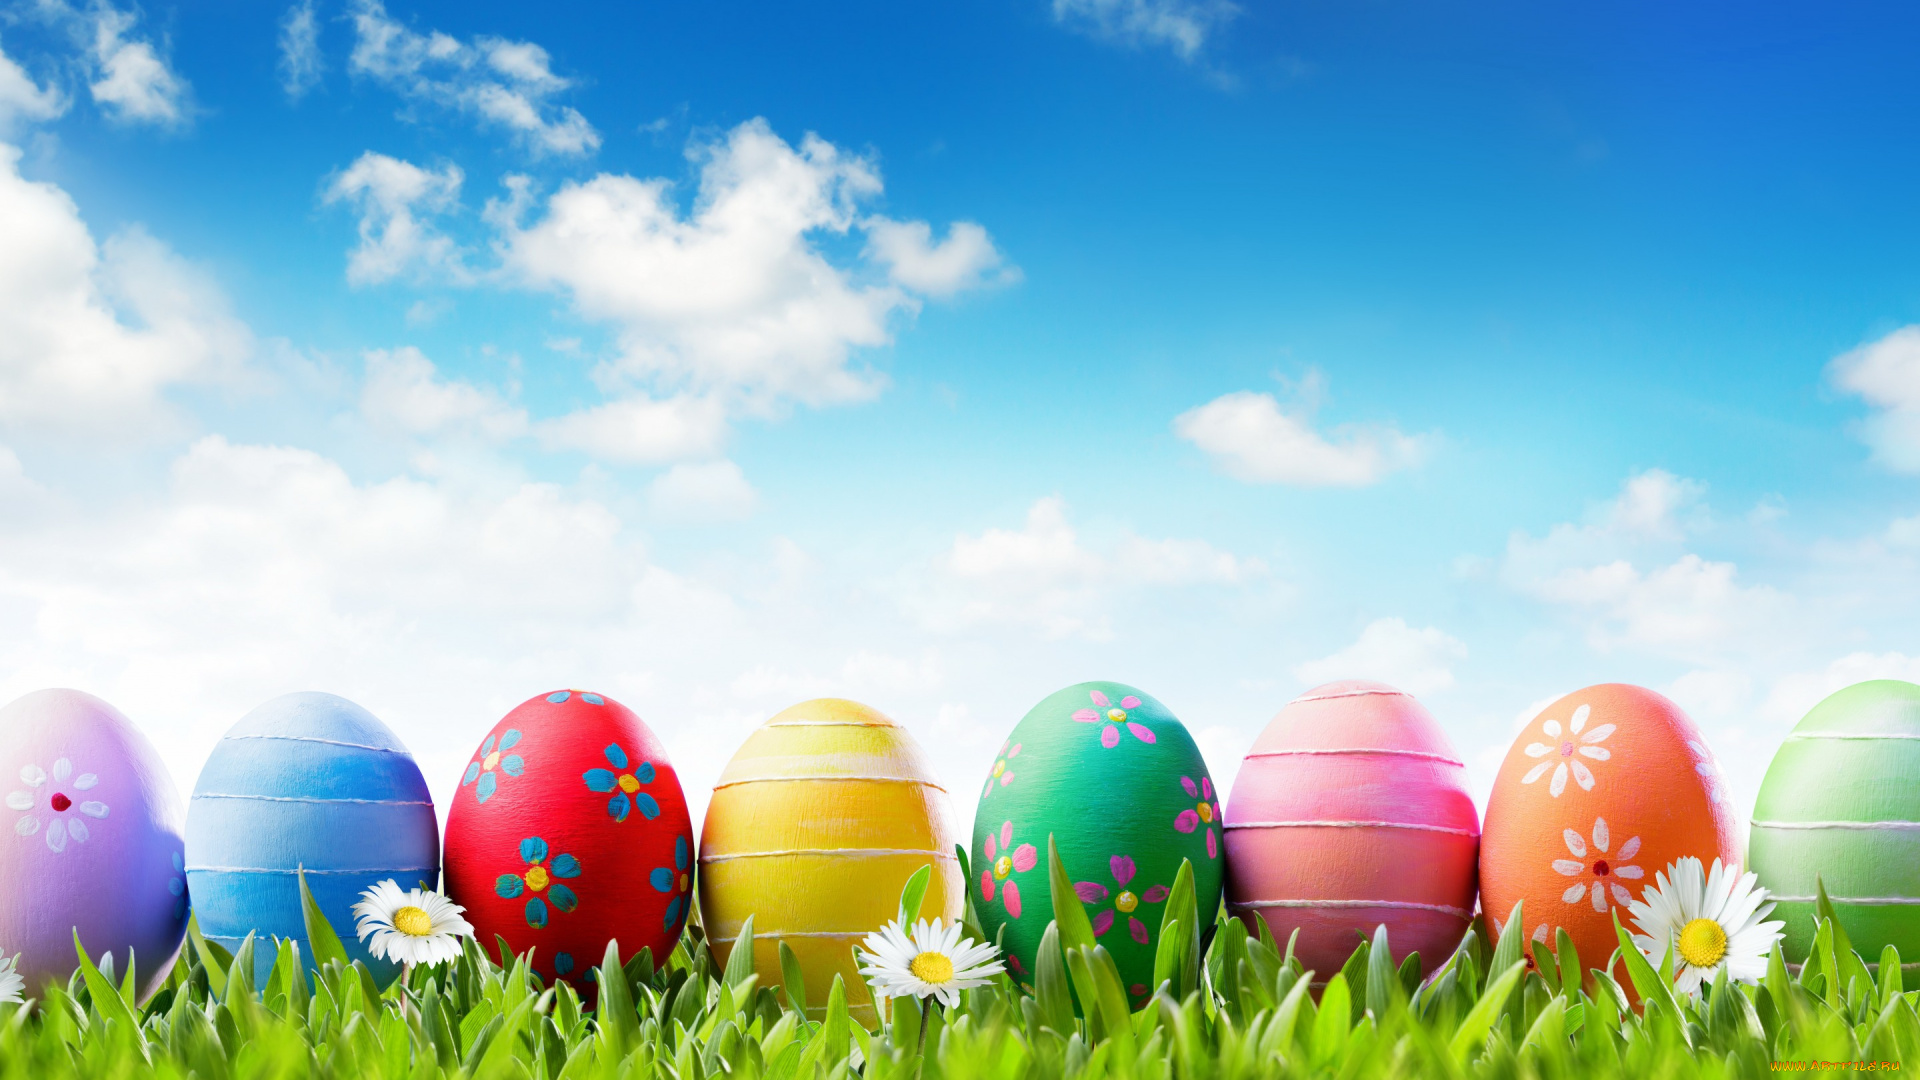 праздничные, пасха, весна, трава, небо, decoration, easter, солнце, flowers, яйца, крашеные, happy, spring, eggs, цветы